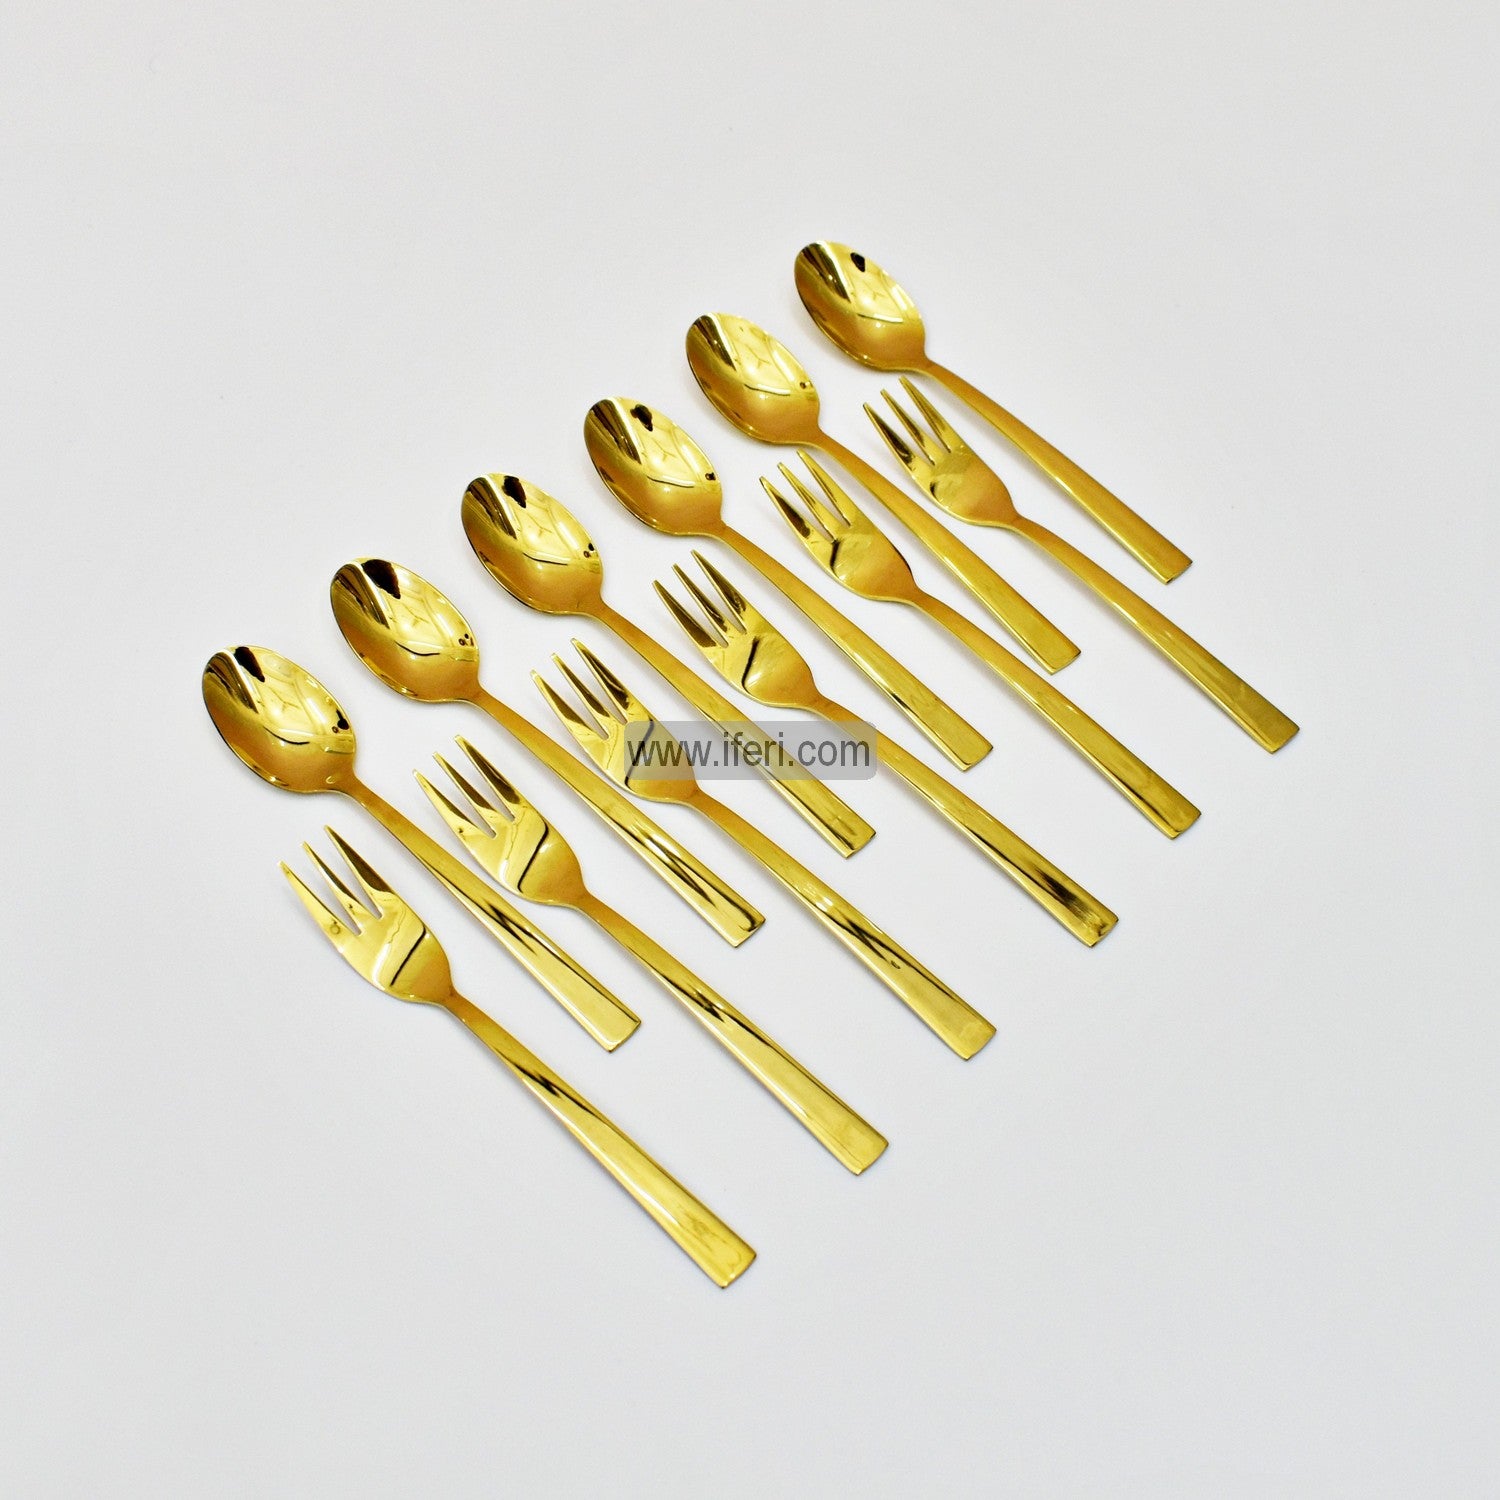 12 Pcs Stainless Steel Tea Spoon & Fork Set TB1220